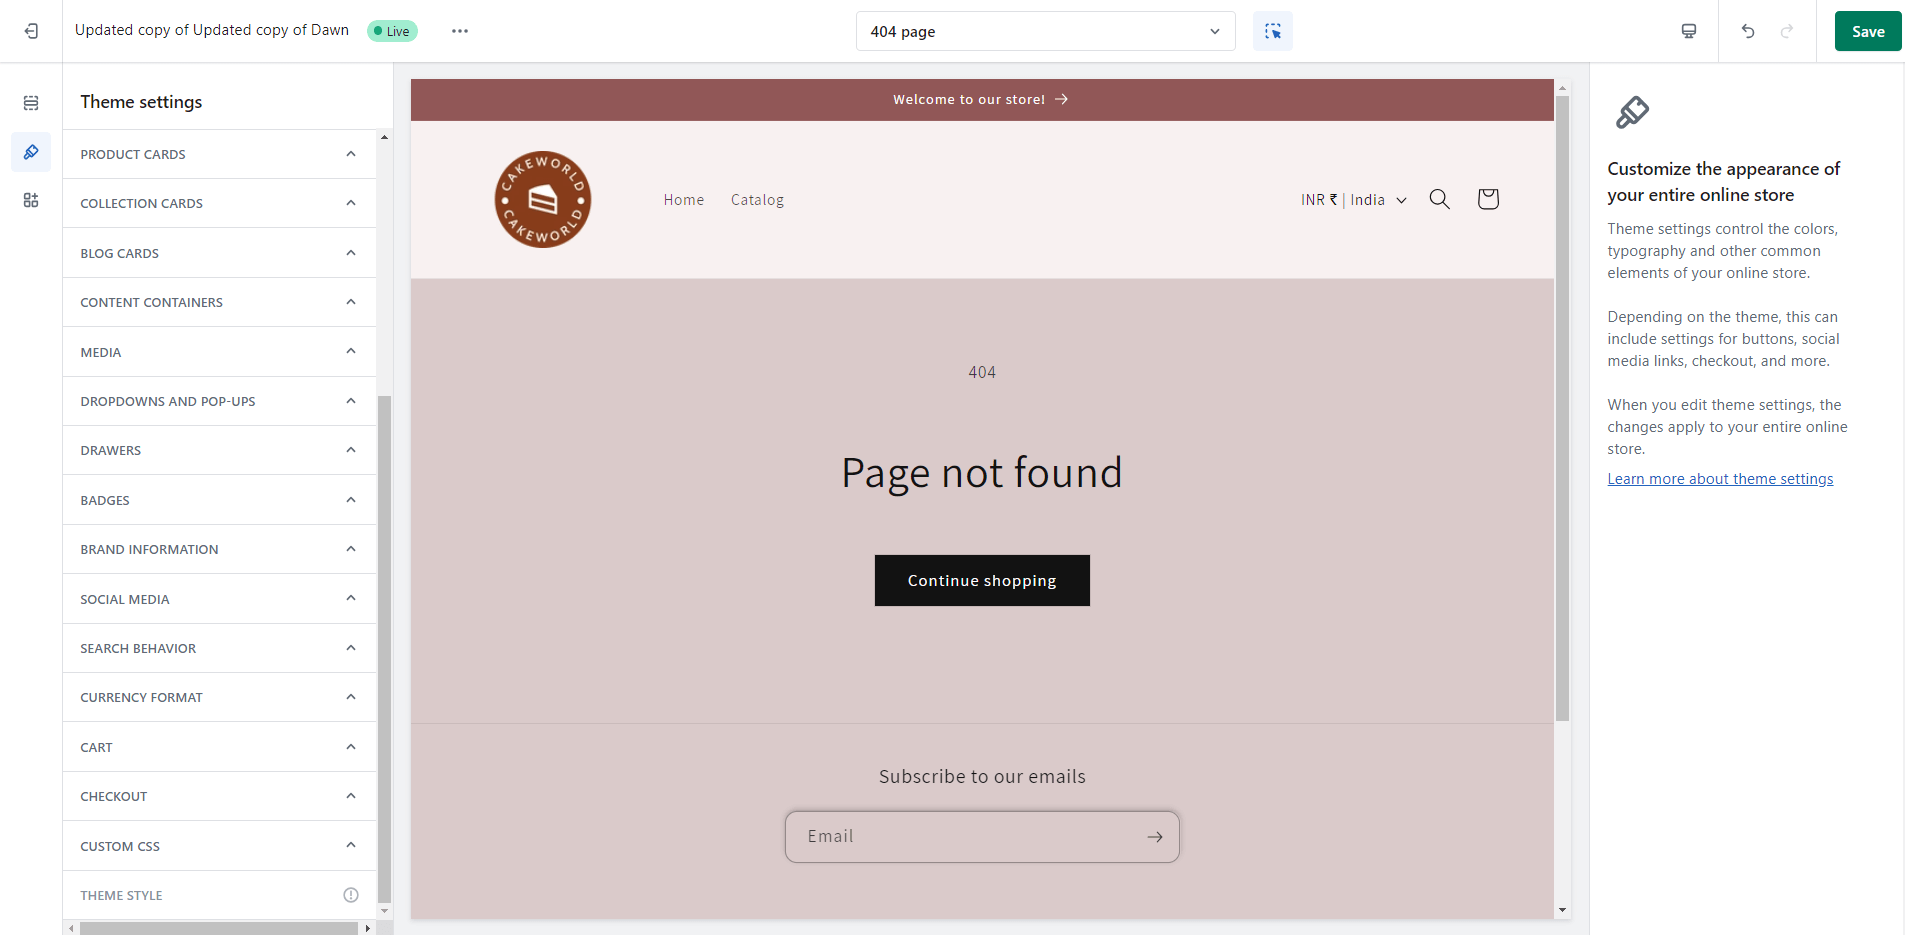 dawn theme 404 page